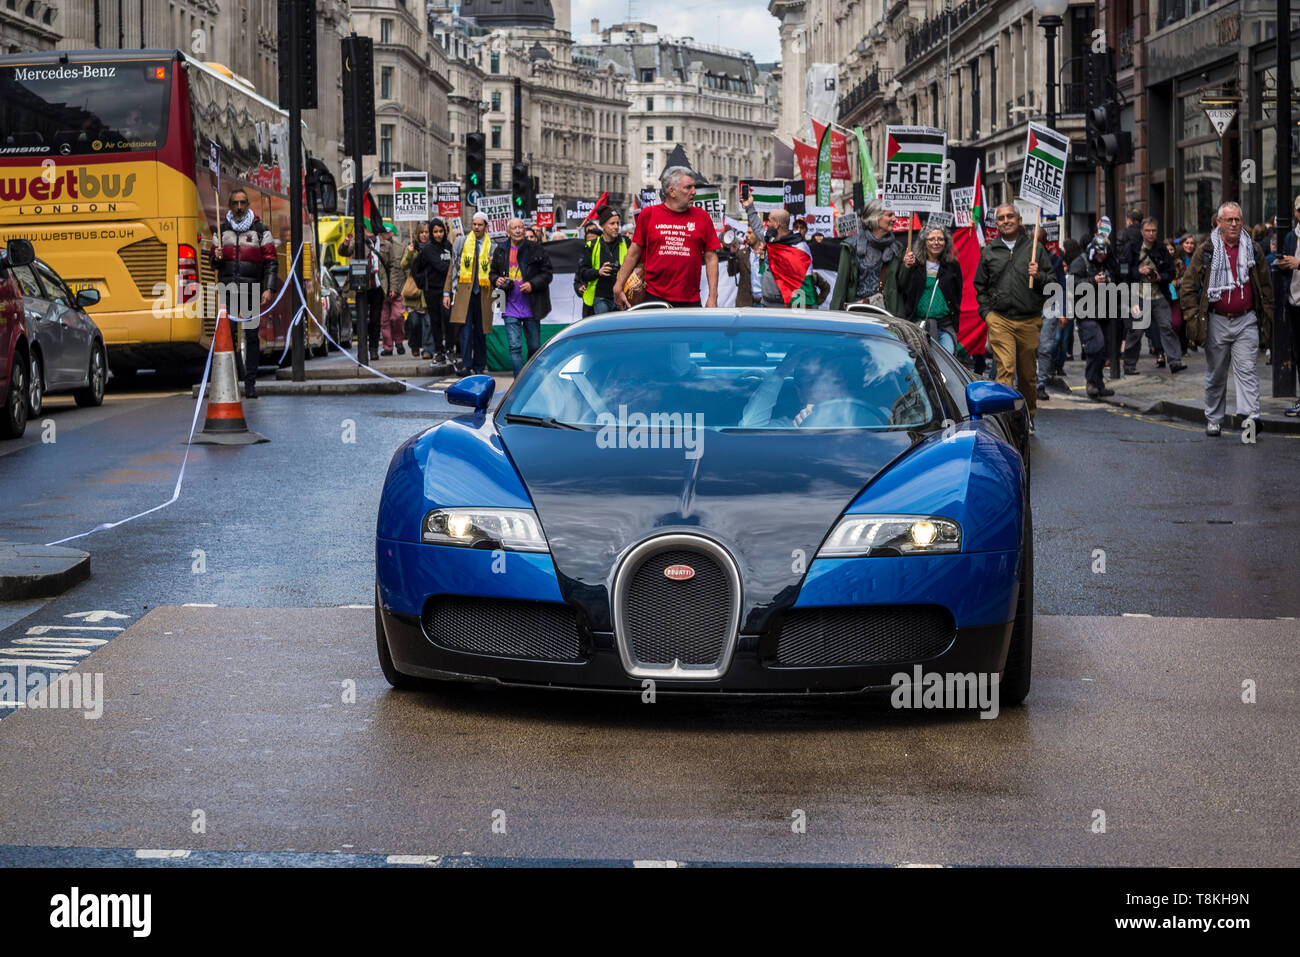 Nationale Demonstration für Palästina, Bugatti fahren der falsche Weg, London, UK 11.05.2019 Stockfoto